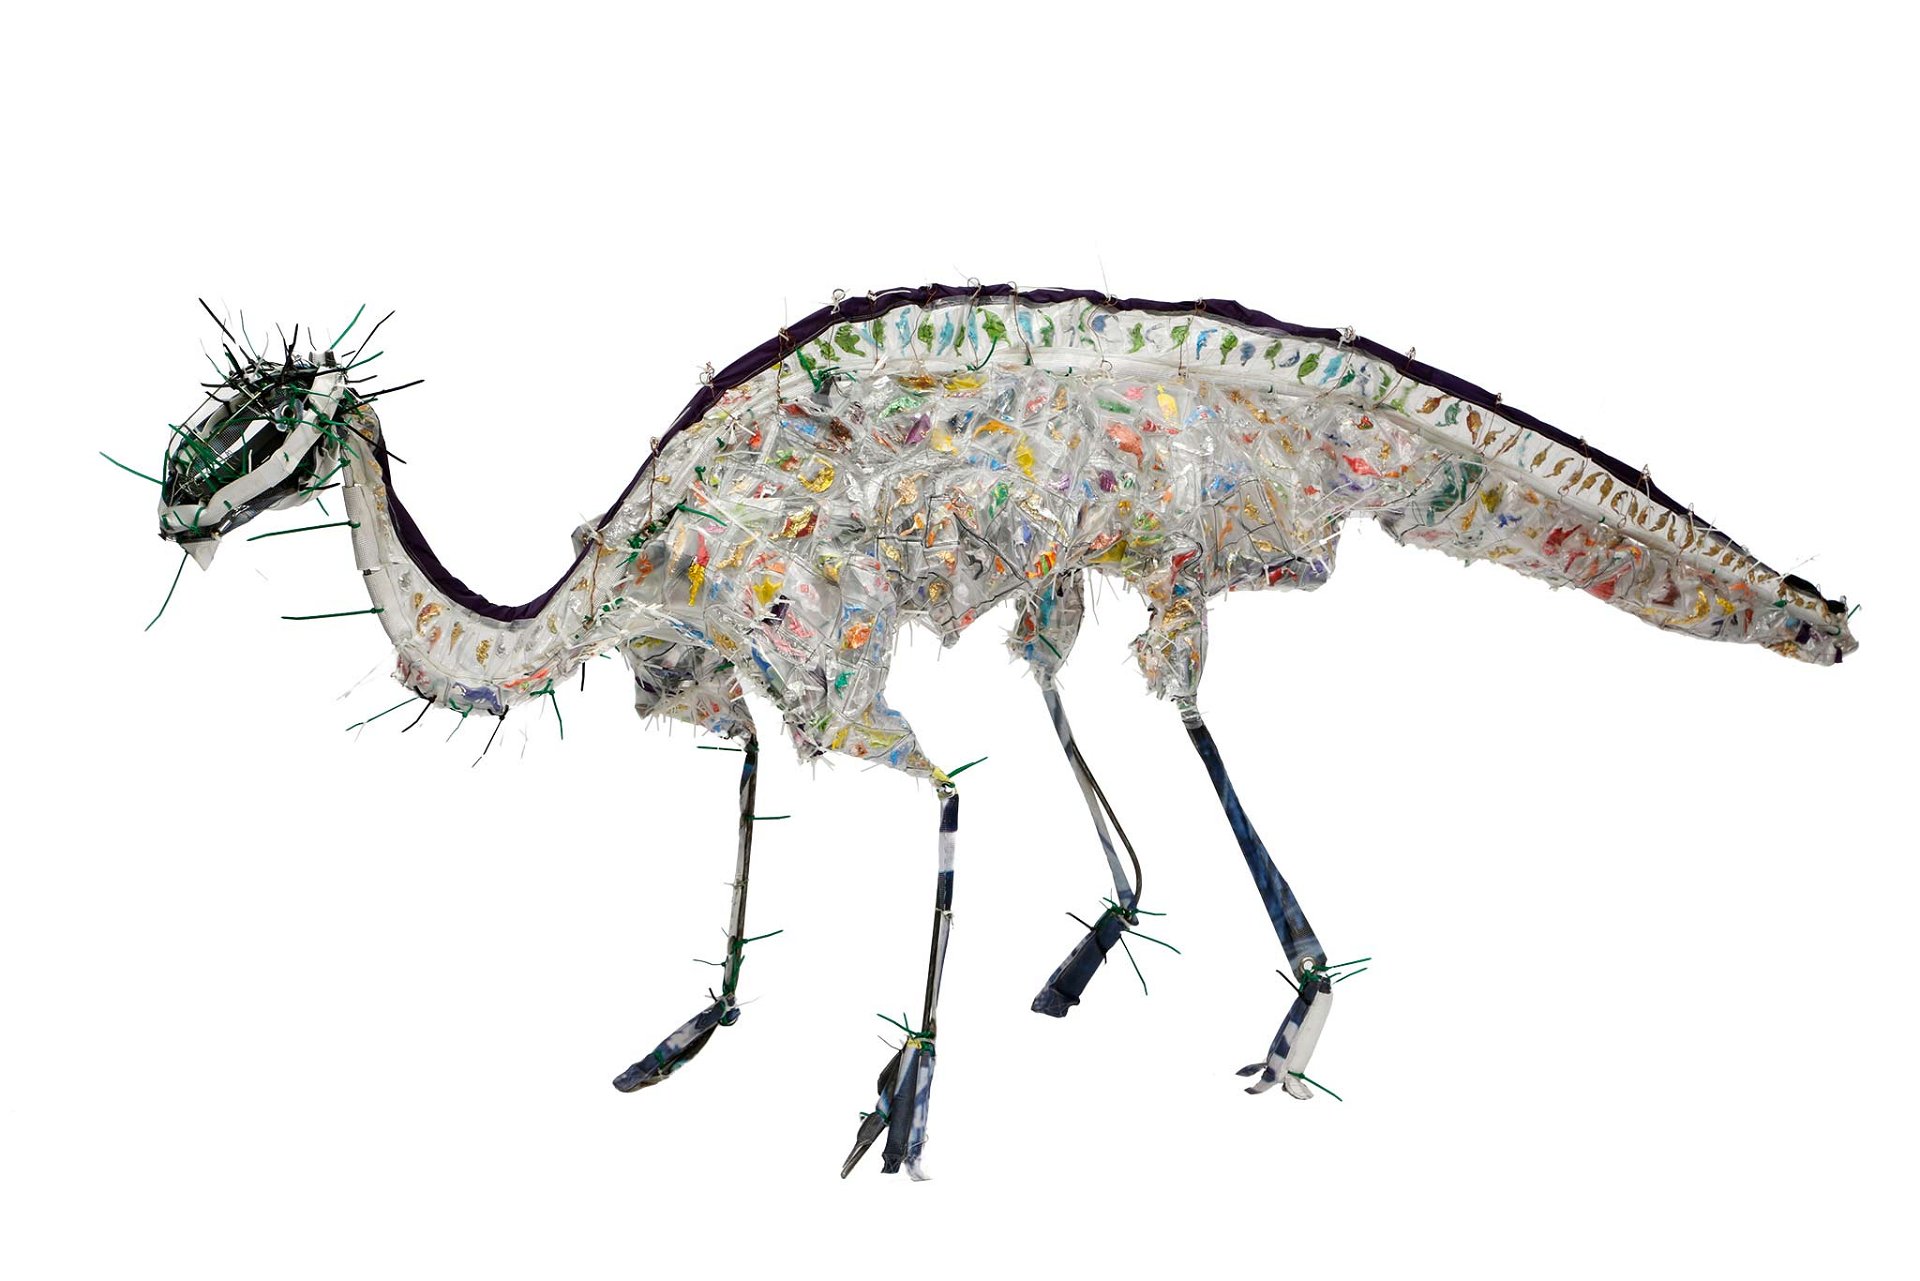 2. »Majasaura« von Julia Krause-Harder, 2016 »Die autistische Künstlerin schafft Saurier aus Fundstücken. Majasaura trägt in ihrem Plastikkörper unzählige kleine Dinosaurier, geformt aus Zuckerlpapier.«